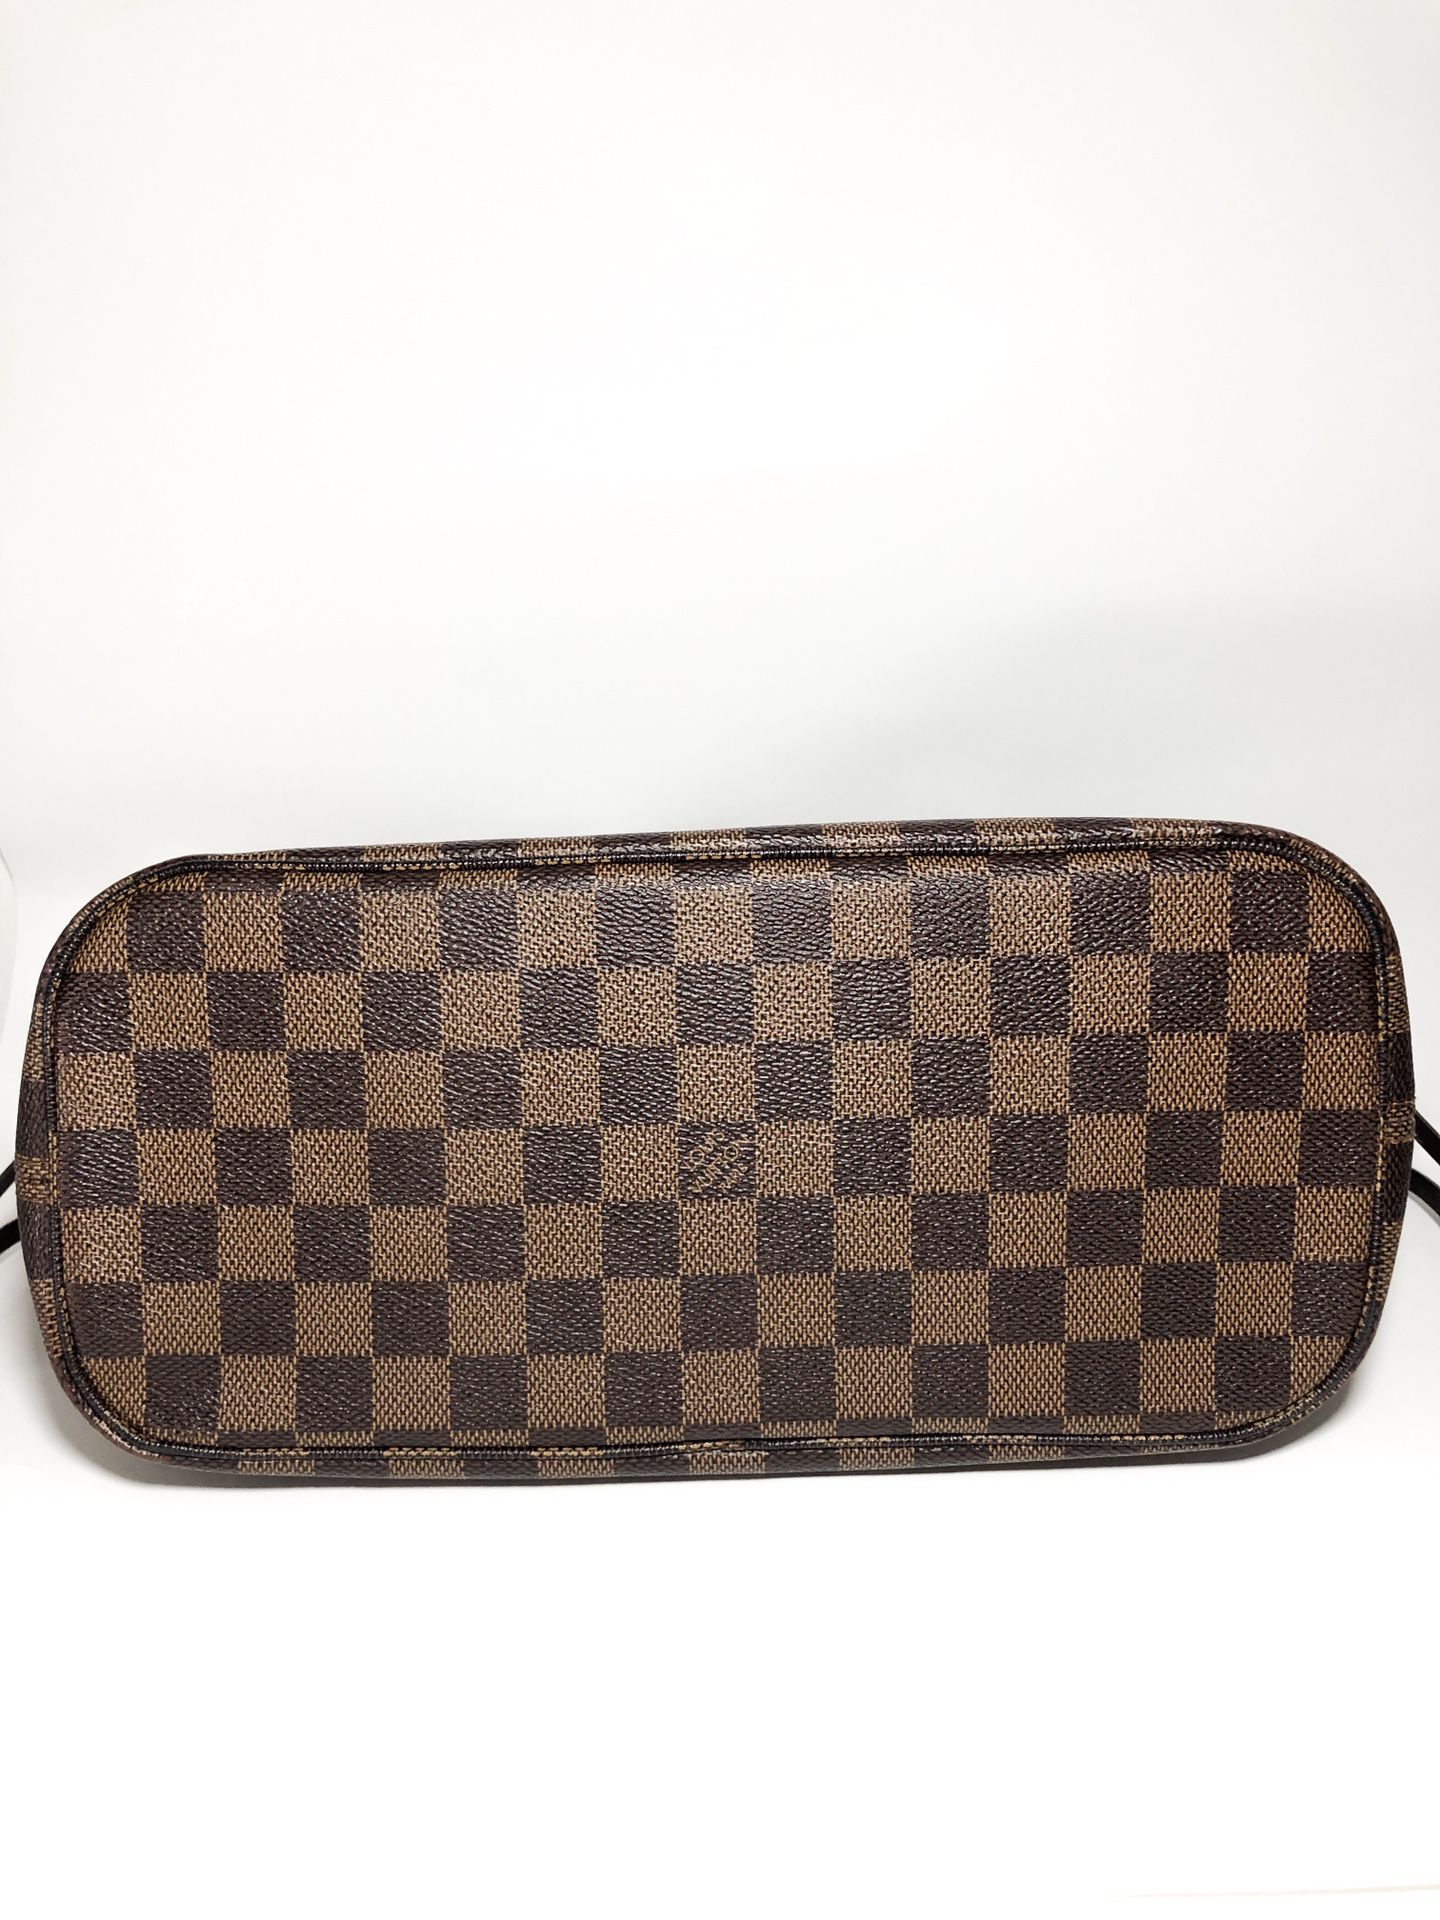 Authenticated Used LOUIS VUITTON Louis Vuitton Damier Handbag